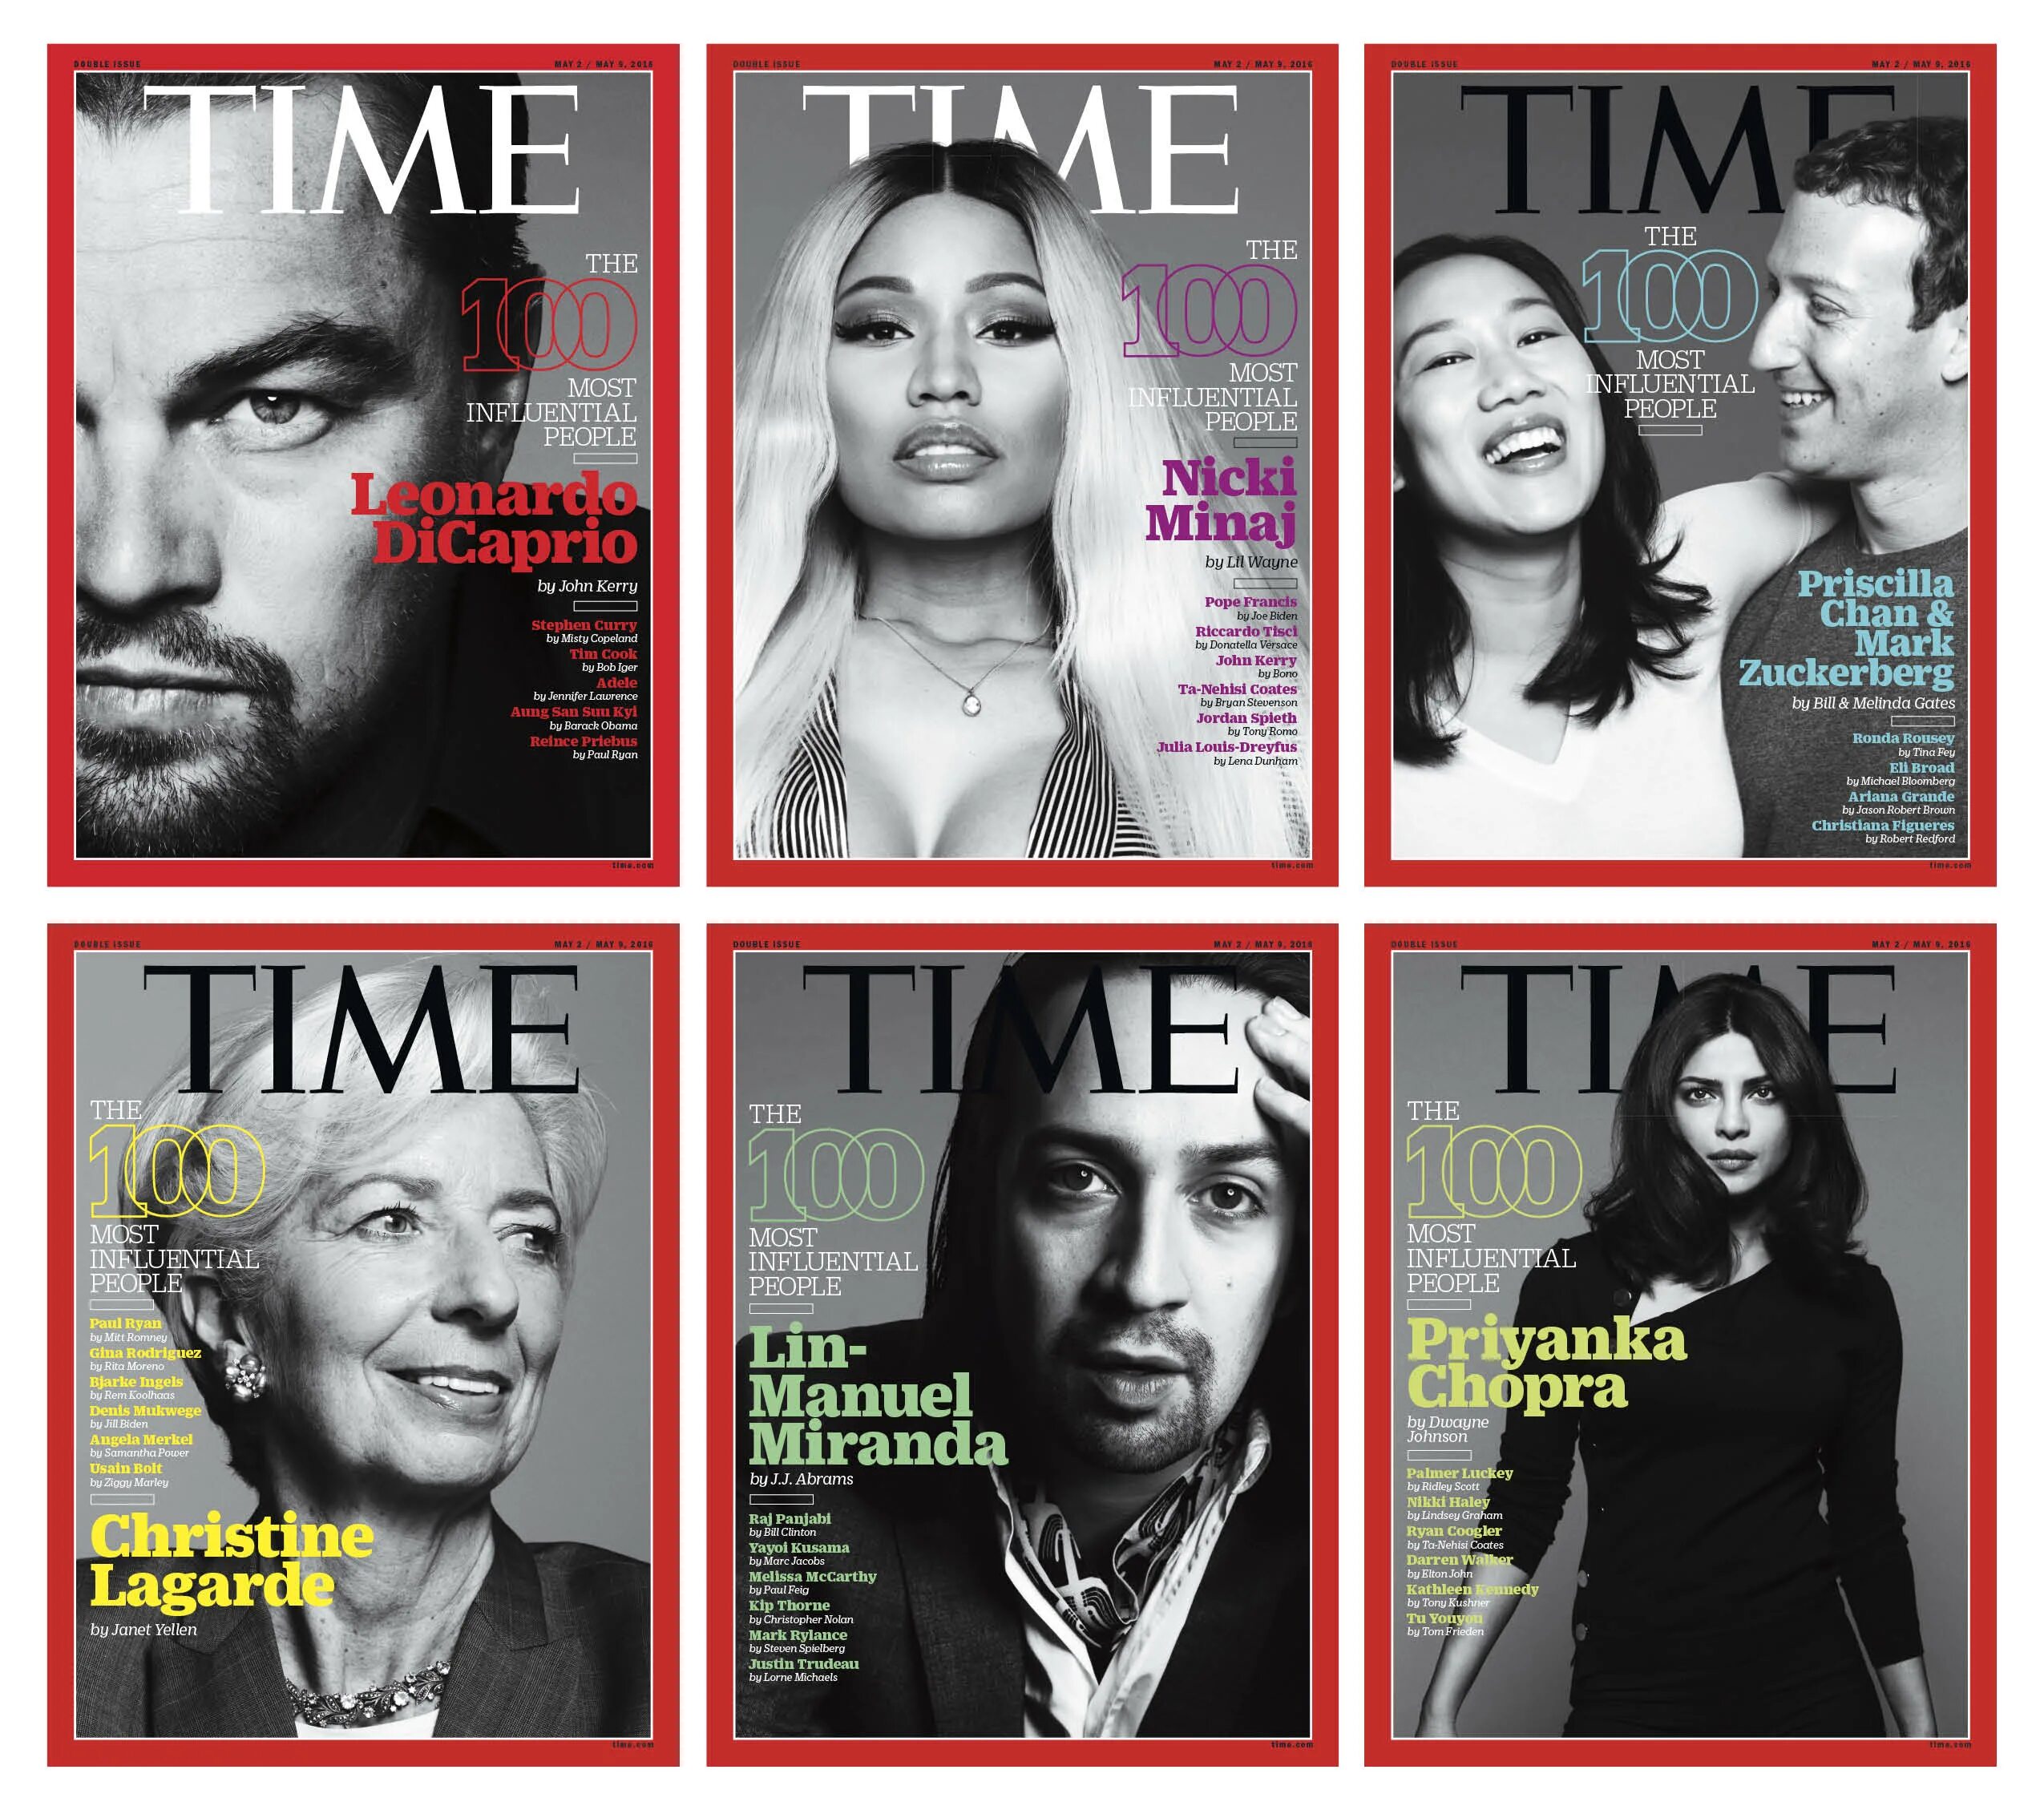 Time 100 влиятельных людей. Обложка журнала тайм. Обложка журнала Таймс 100 влиятельных людей. 100 Самых влиятельных людей в истории книга.